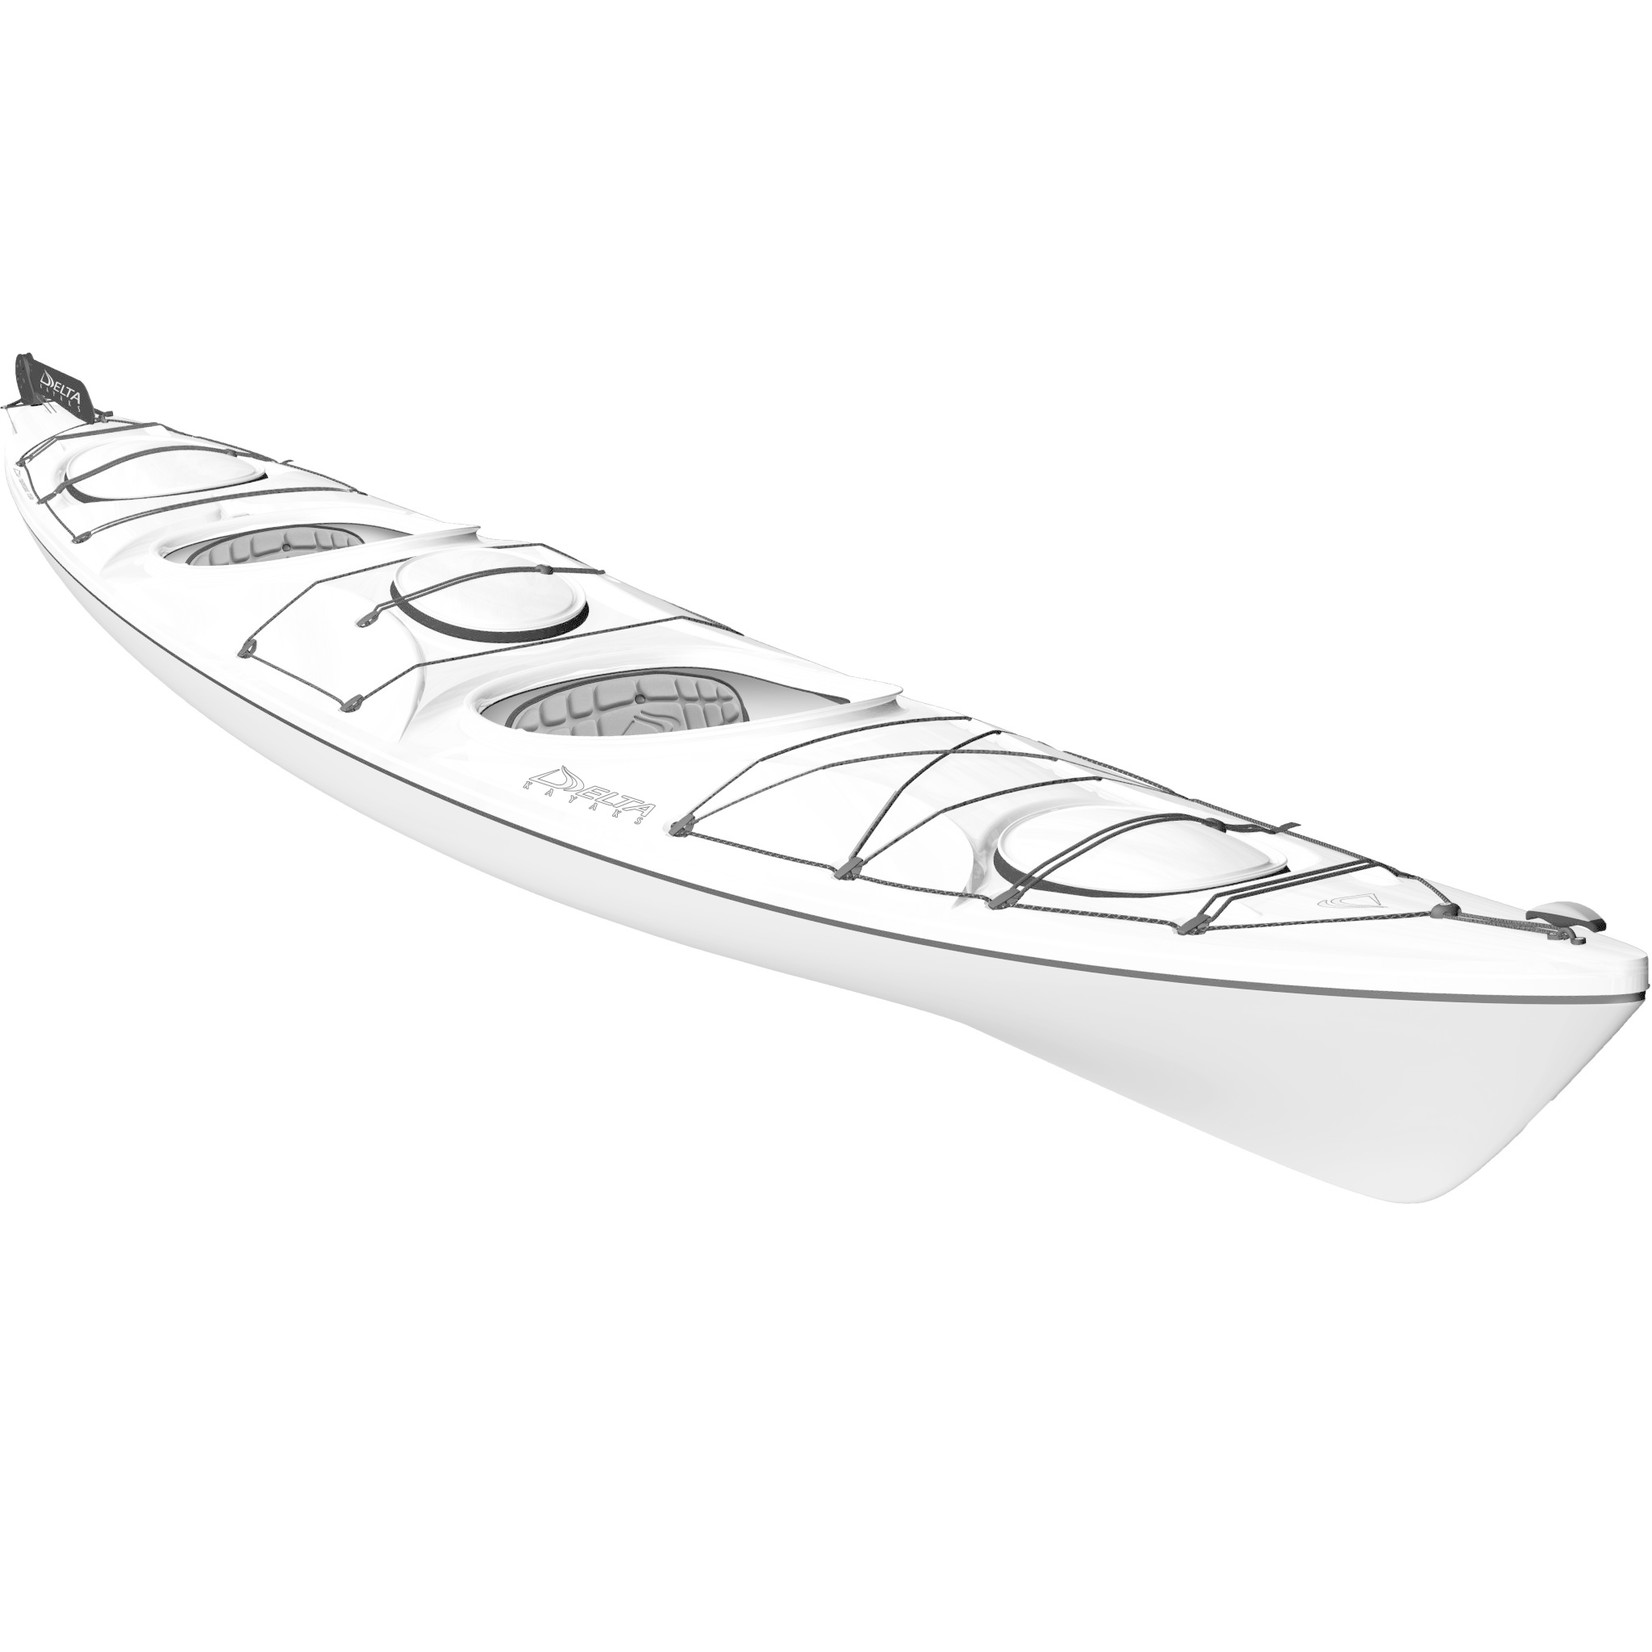 Delta Kayaks 17.5T Tandem